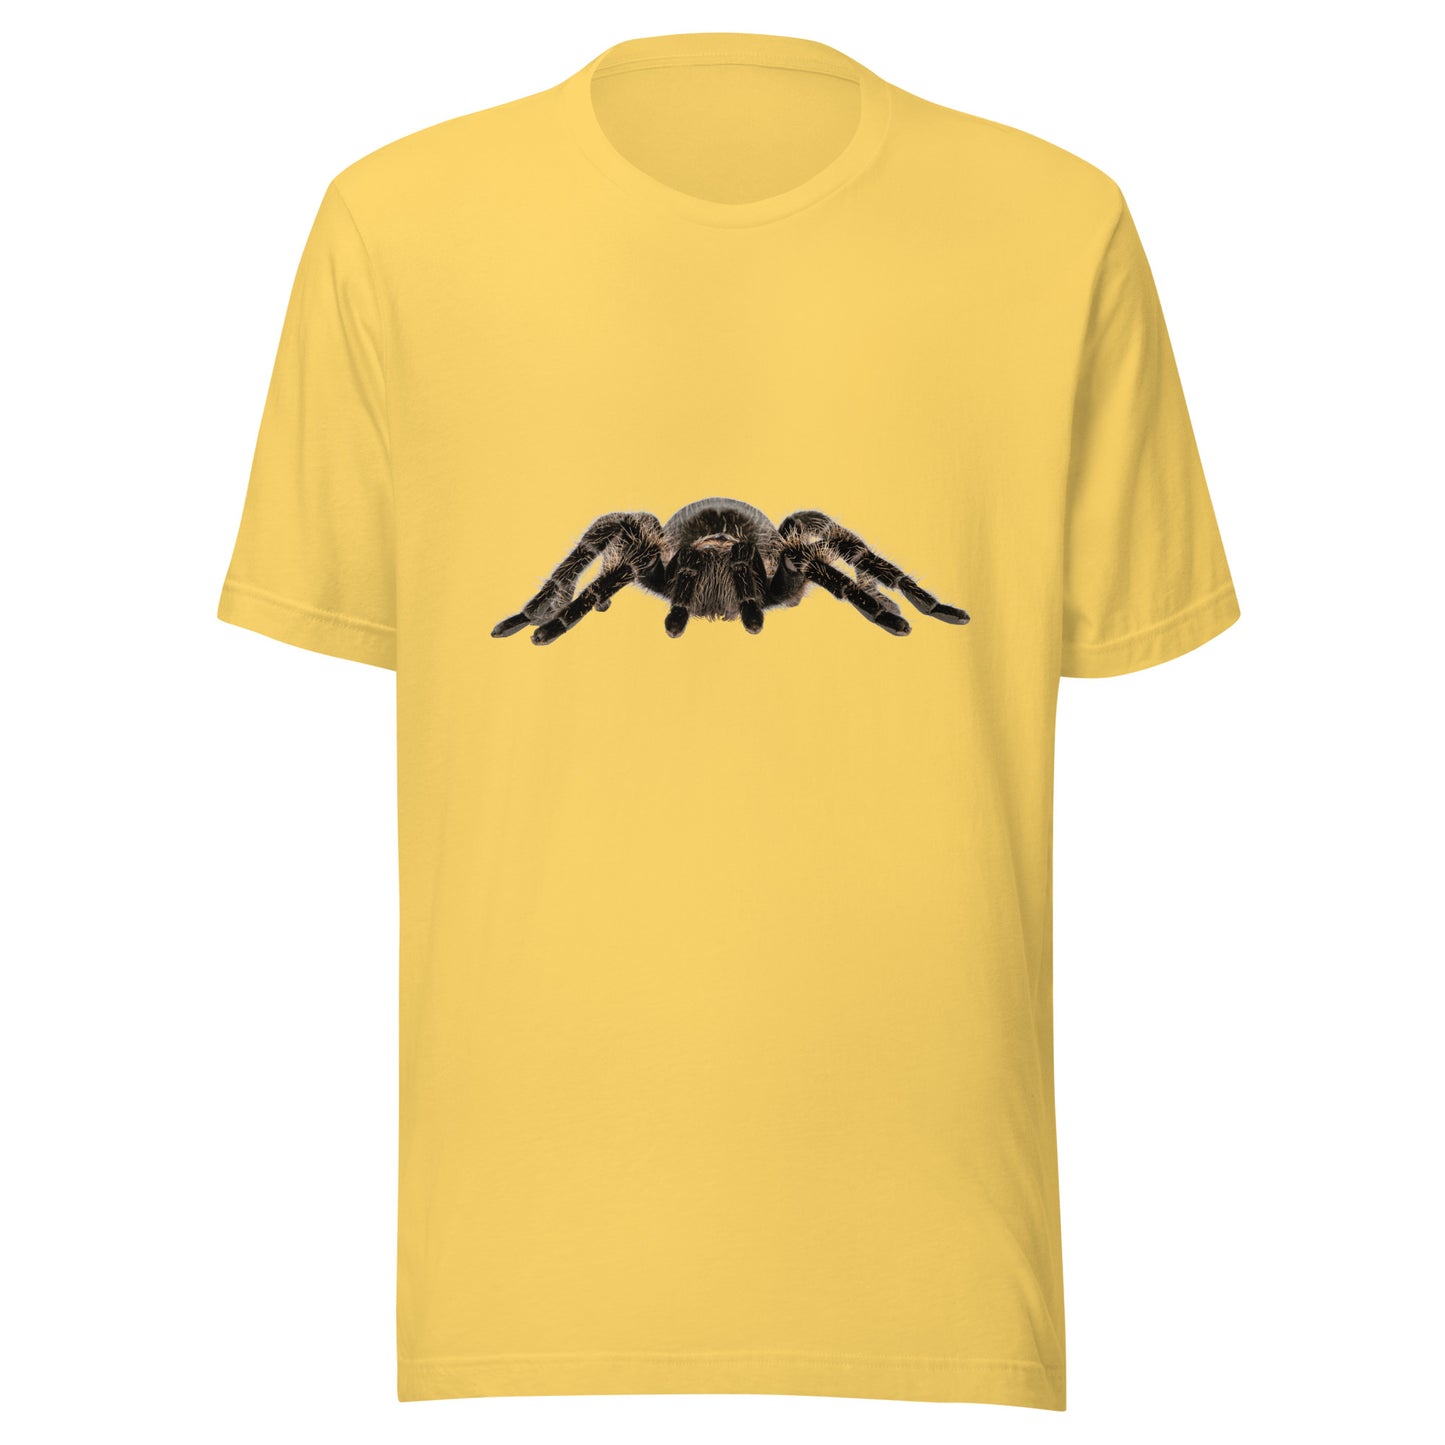 Shop Unique and Comfortable Tarantula Spider T-Shirts Online